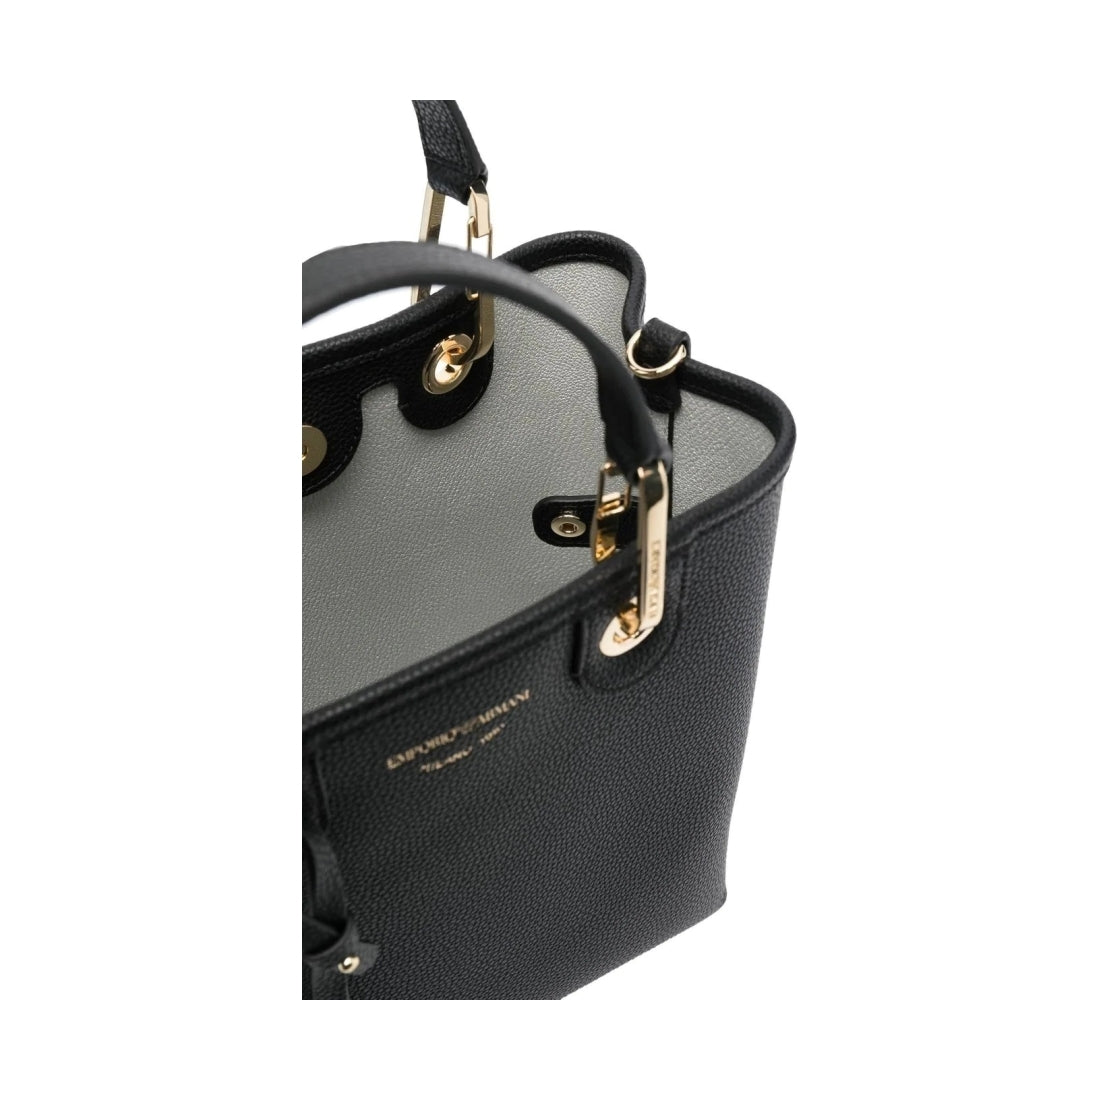 Emporio Armani womens nero, silver shopping bag | Vilbury London